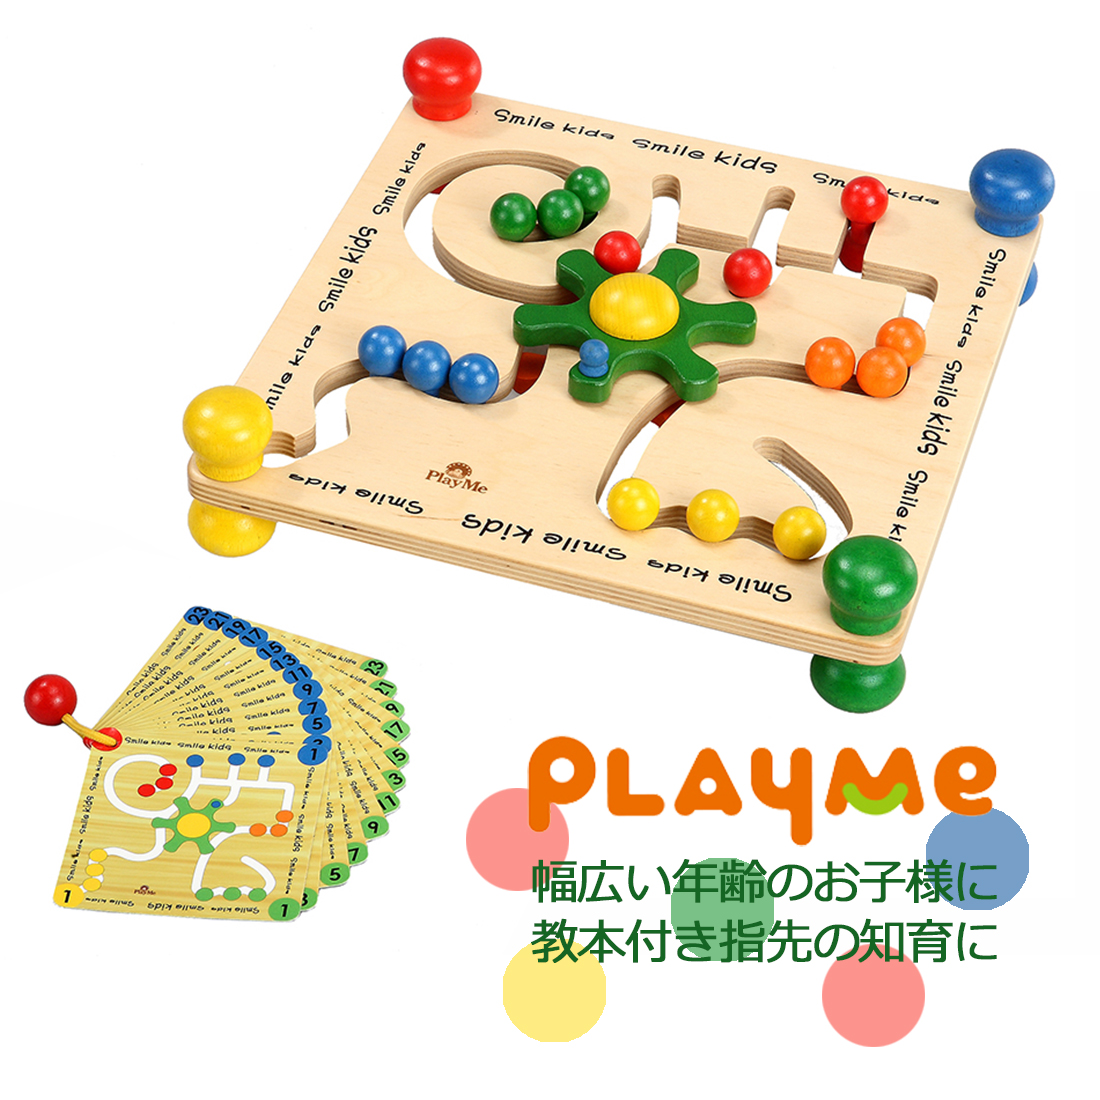 集中力を養う指先知育教材 ビーズステアリング プレイミー PlayMeToys 木のおもちゃ 教本付き